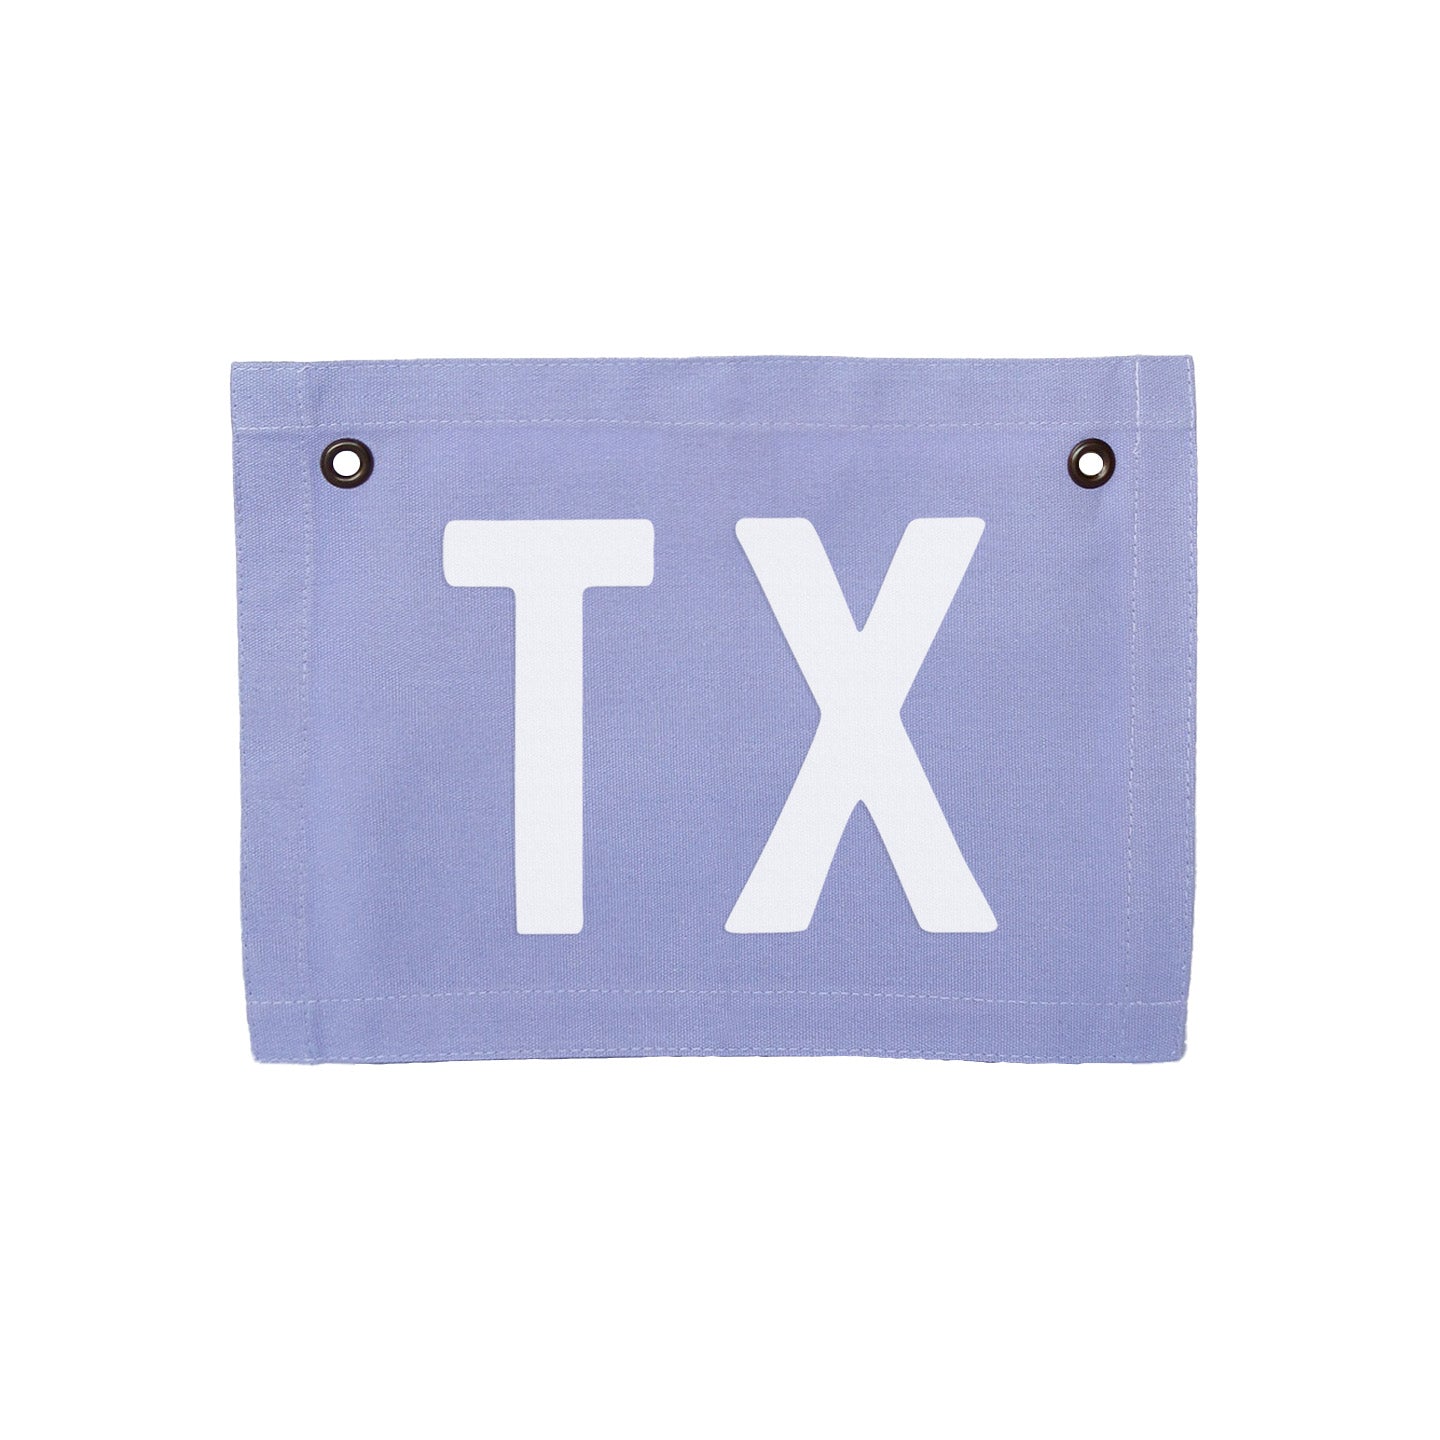 TX Small Canvas Flag